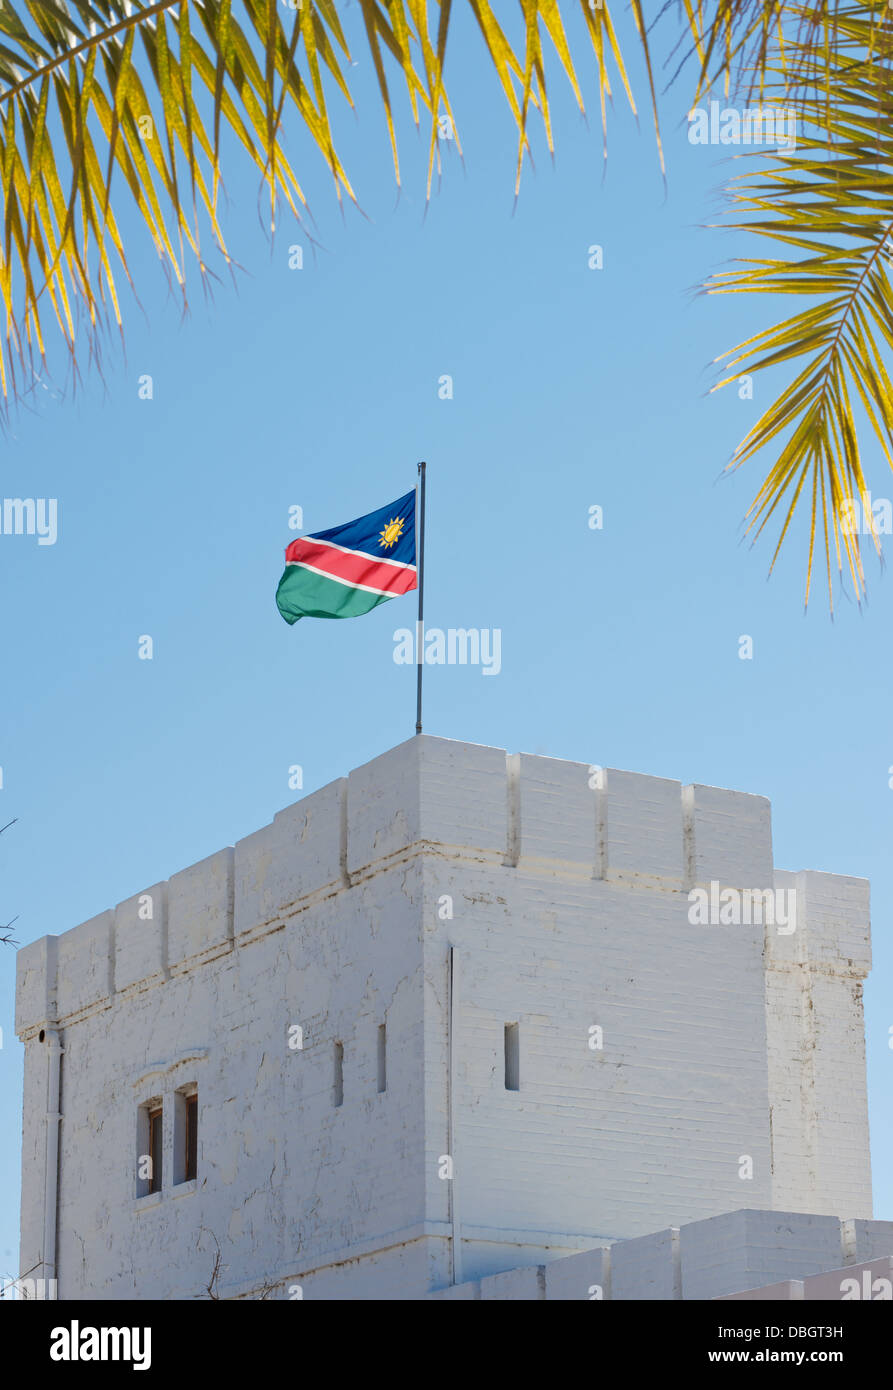 Namibian flag at Namutoni Namibia Africa Stock Photo